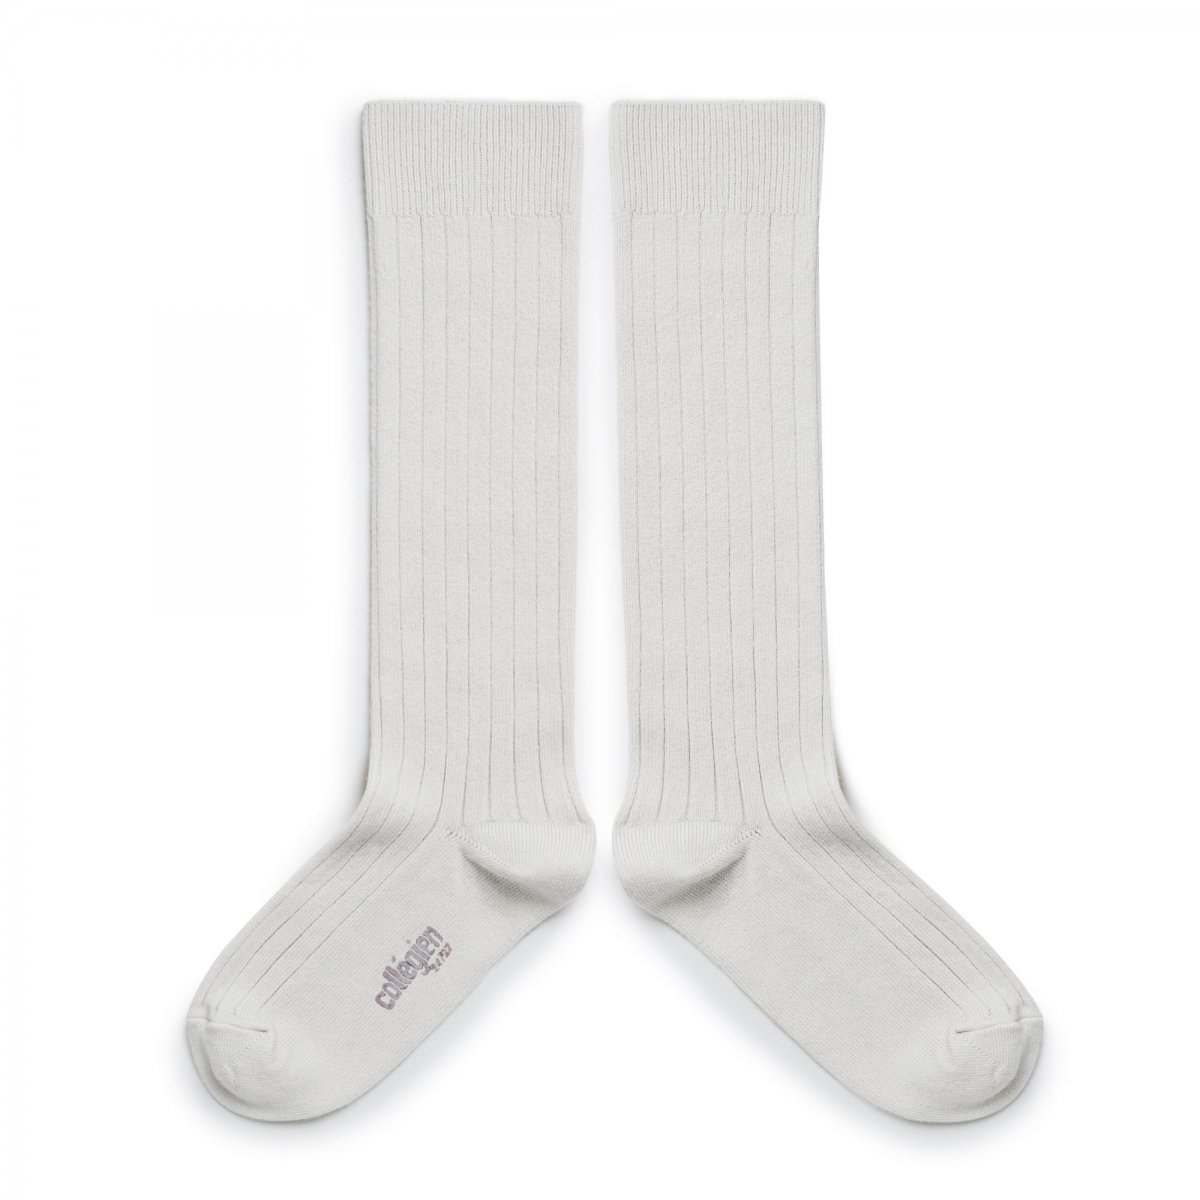 Collégien - Knee high socks La Haute blanc neige - Collants et chaussettes - 2950 908 La Haute 